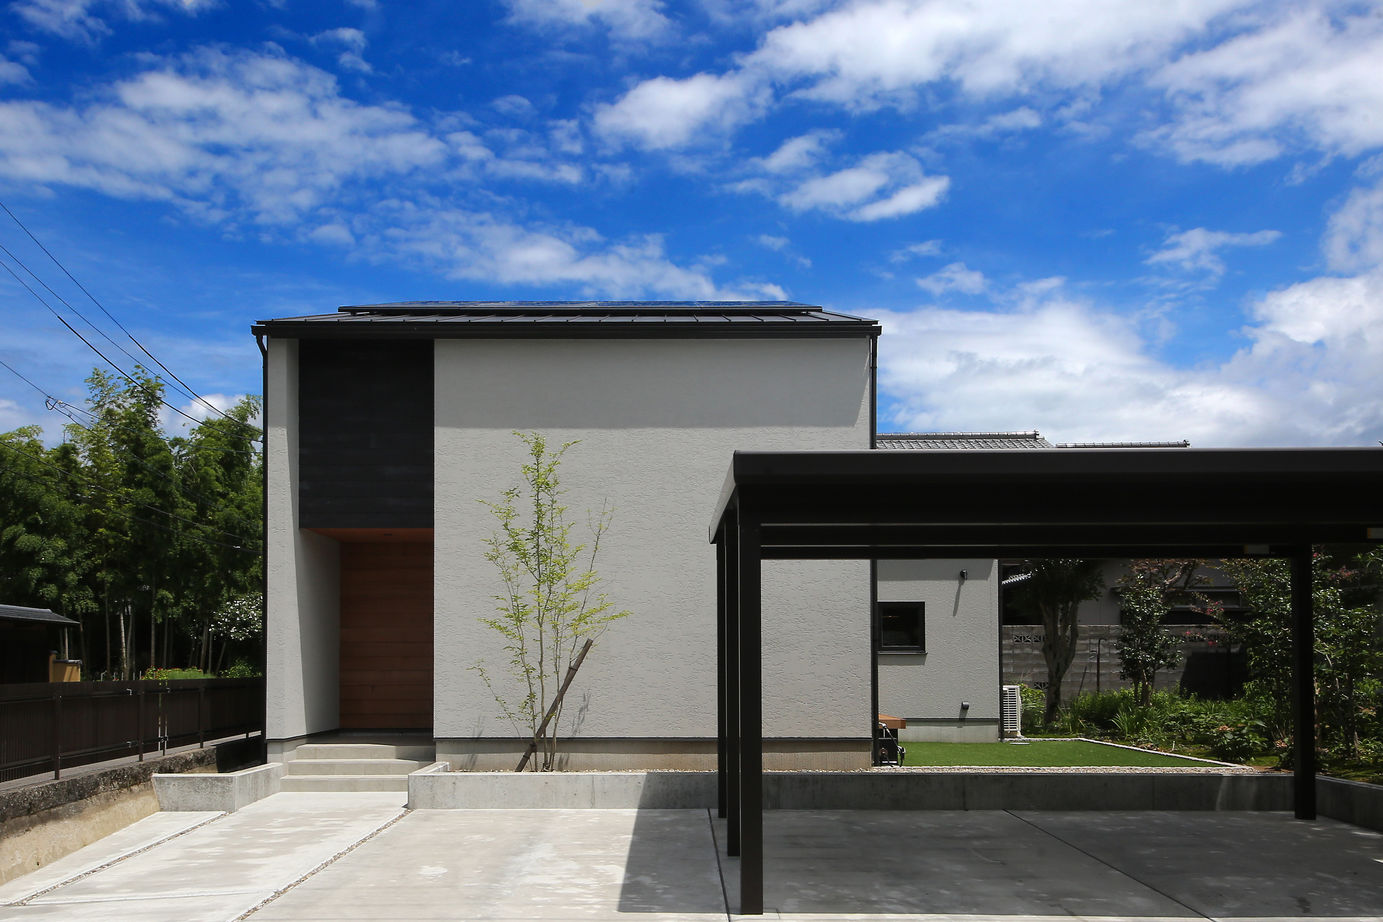 Suumo 吹抜け 庭 静かな庭のある家 Tn House シィー プランニング の建築実例詳細 注文住宅